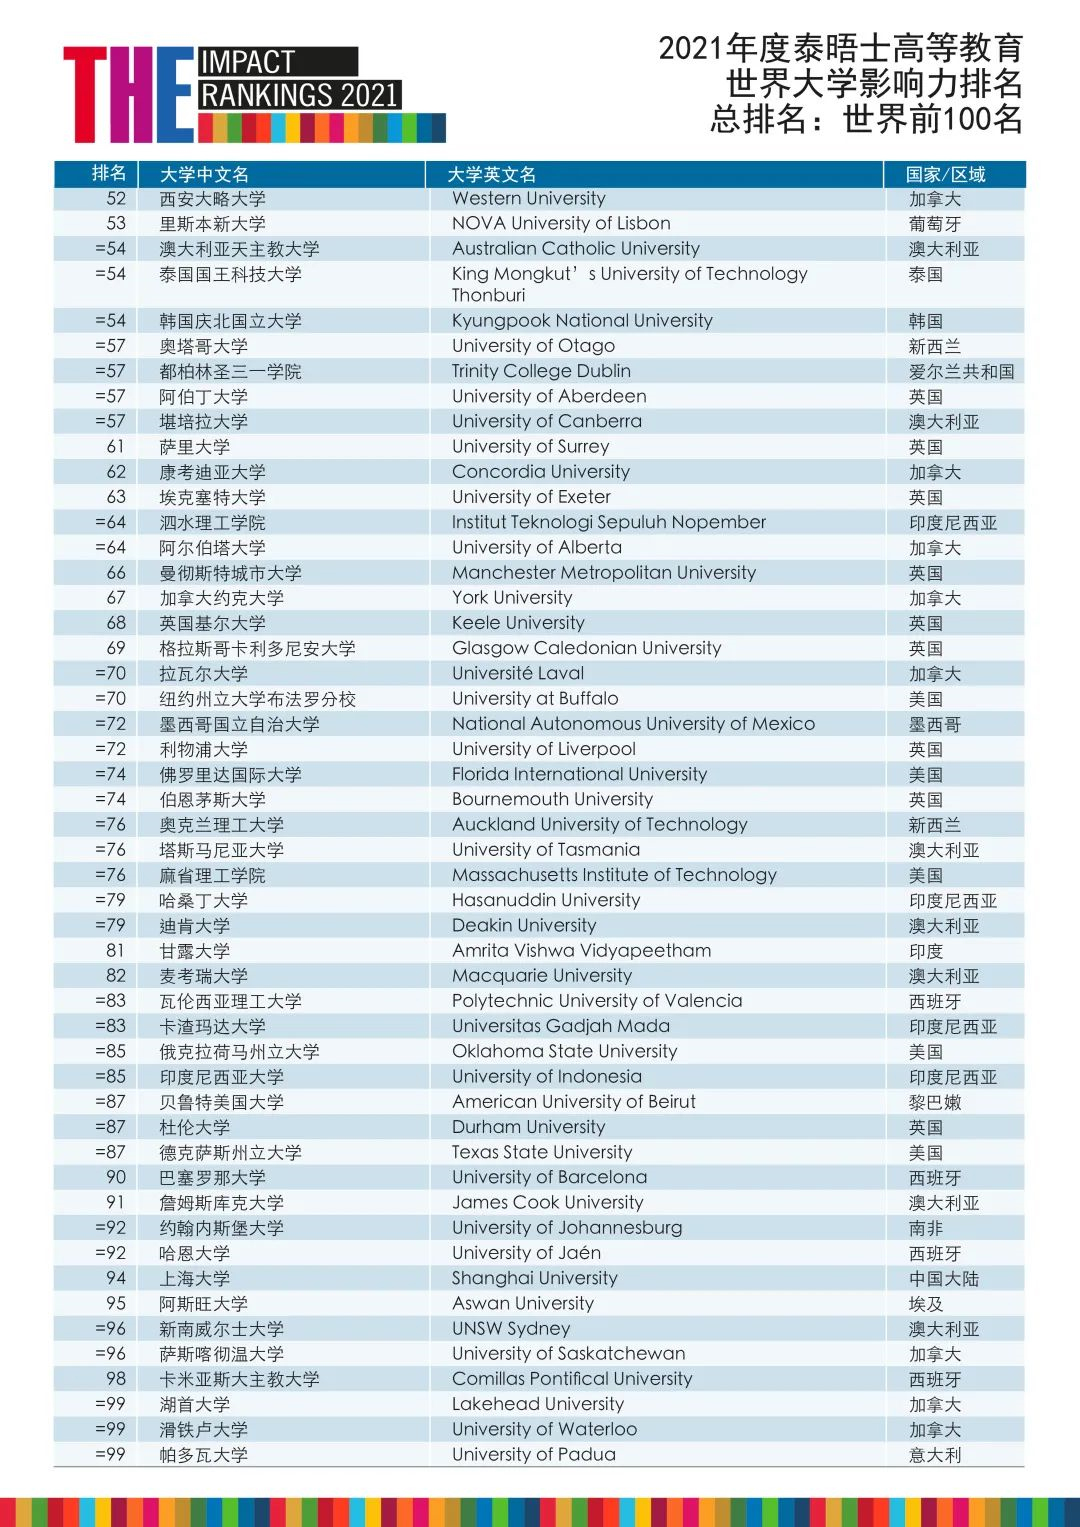 泰晤士高等教育2021年度世界大学影响力排名TOP100 (1).jpg